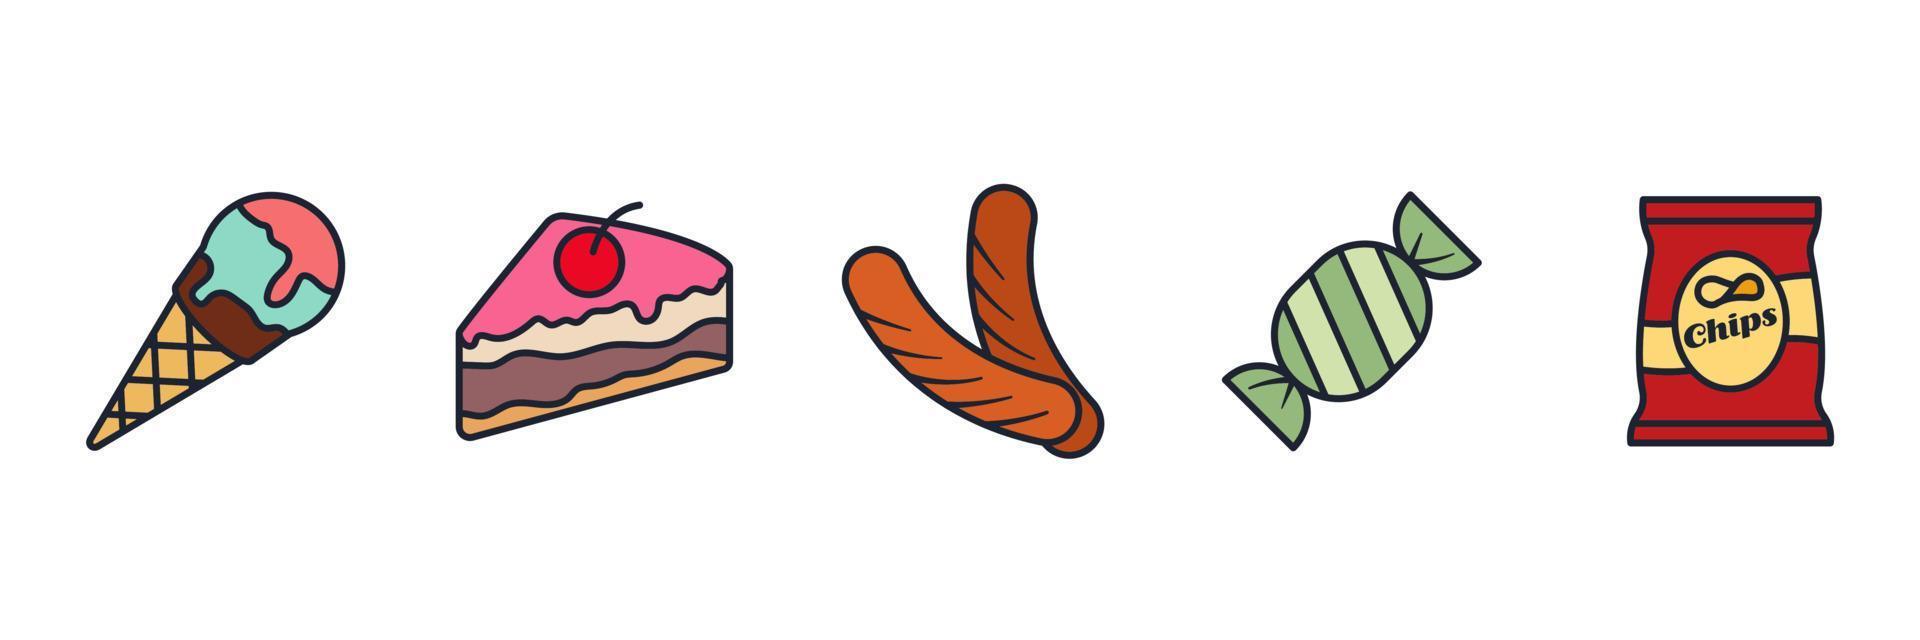 fast food set icona simbolo modello per grafica e web design collezione logo illustrazione vettoriale